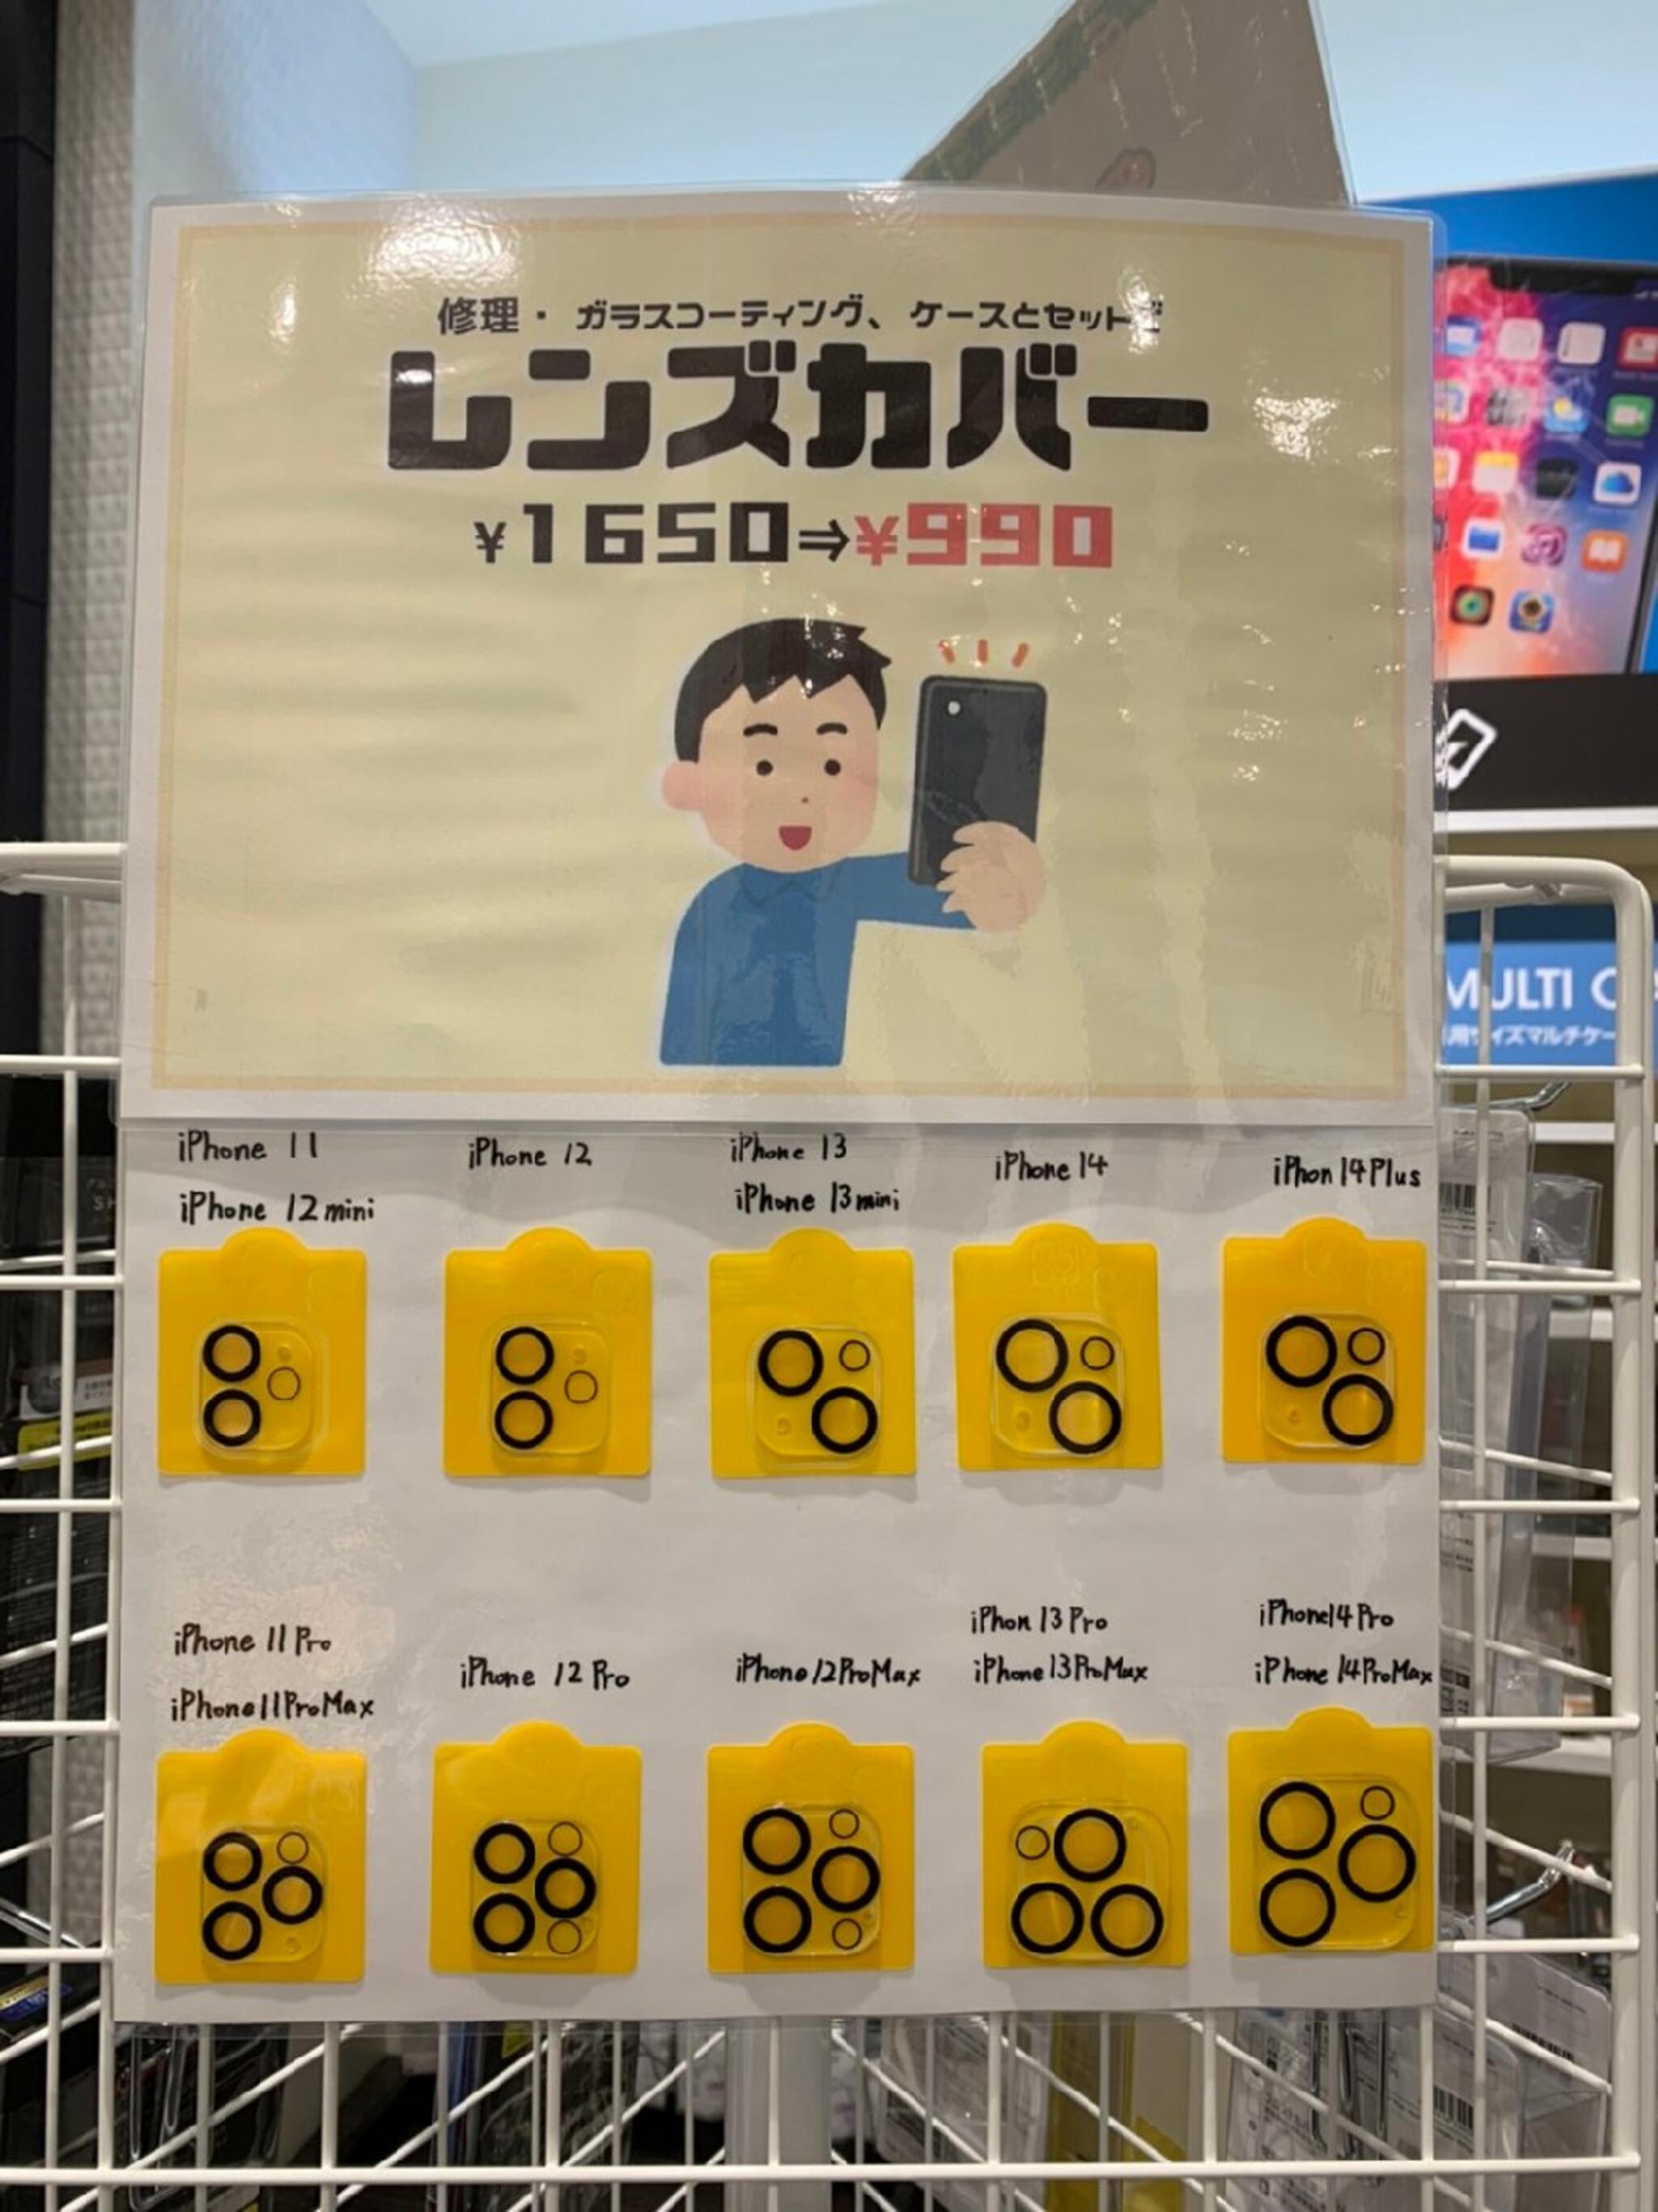 iPhone・iPad・Switch修理店 スマートクール イオンモール広島祇園店からのお知らせ(あなたのiPhoneはカメラレンズを保護 していますか？)に関する写真